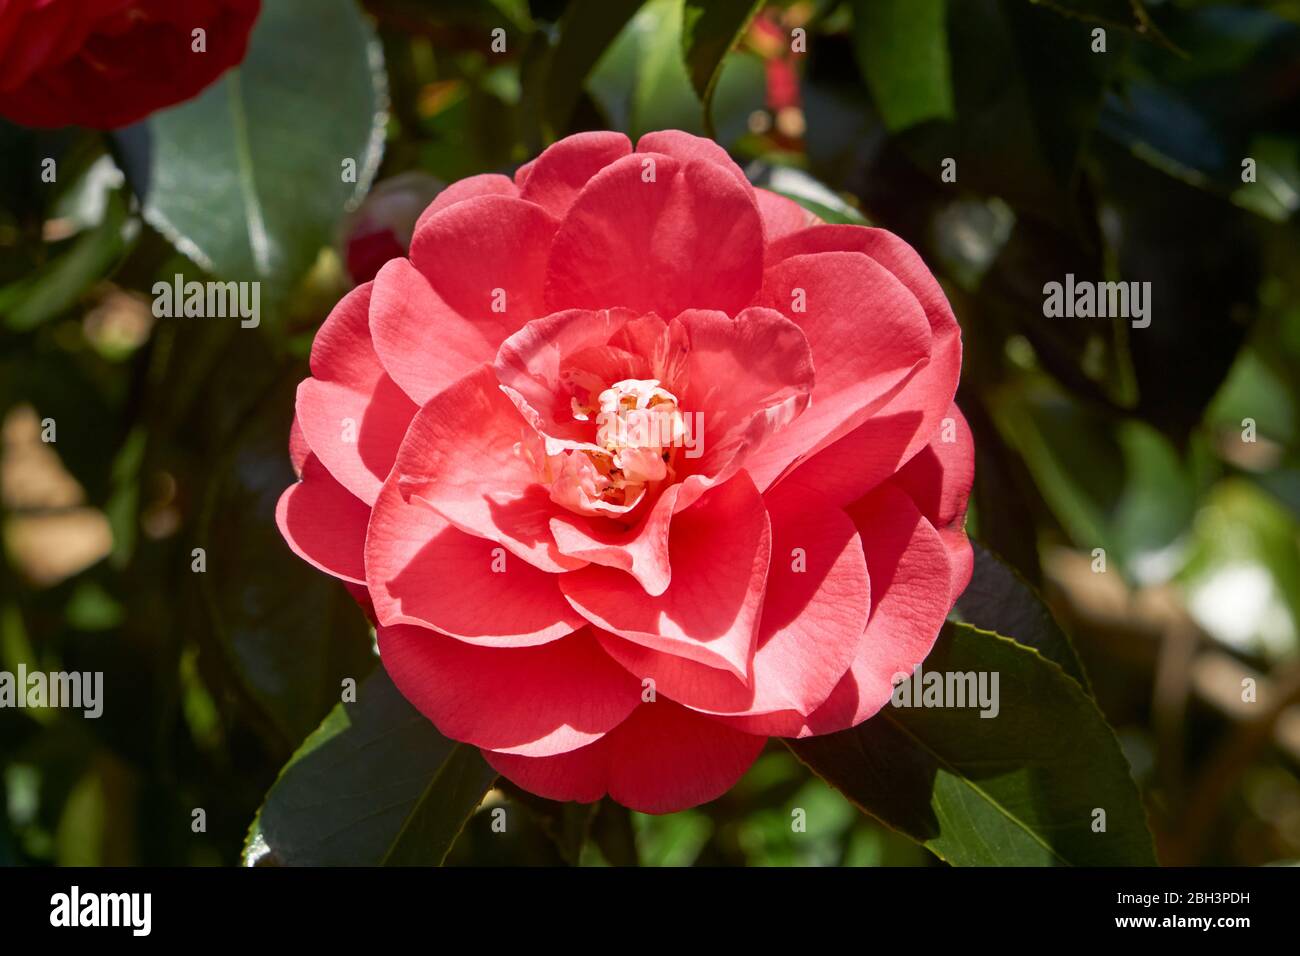 Primer plano de una flor roja de camelia que florece en primavera Foto de stock